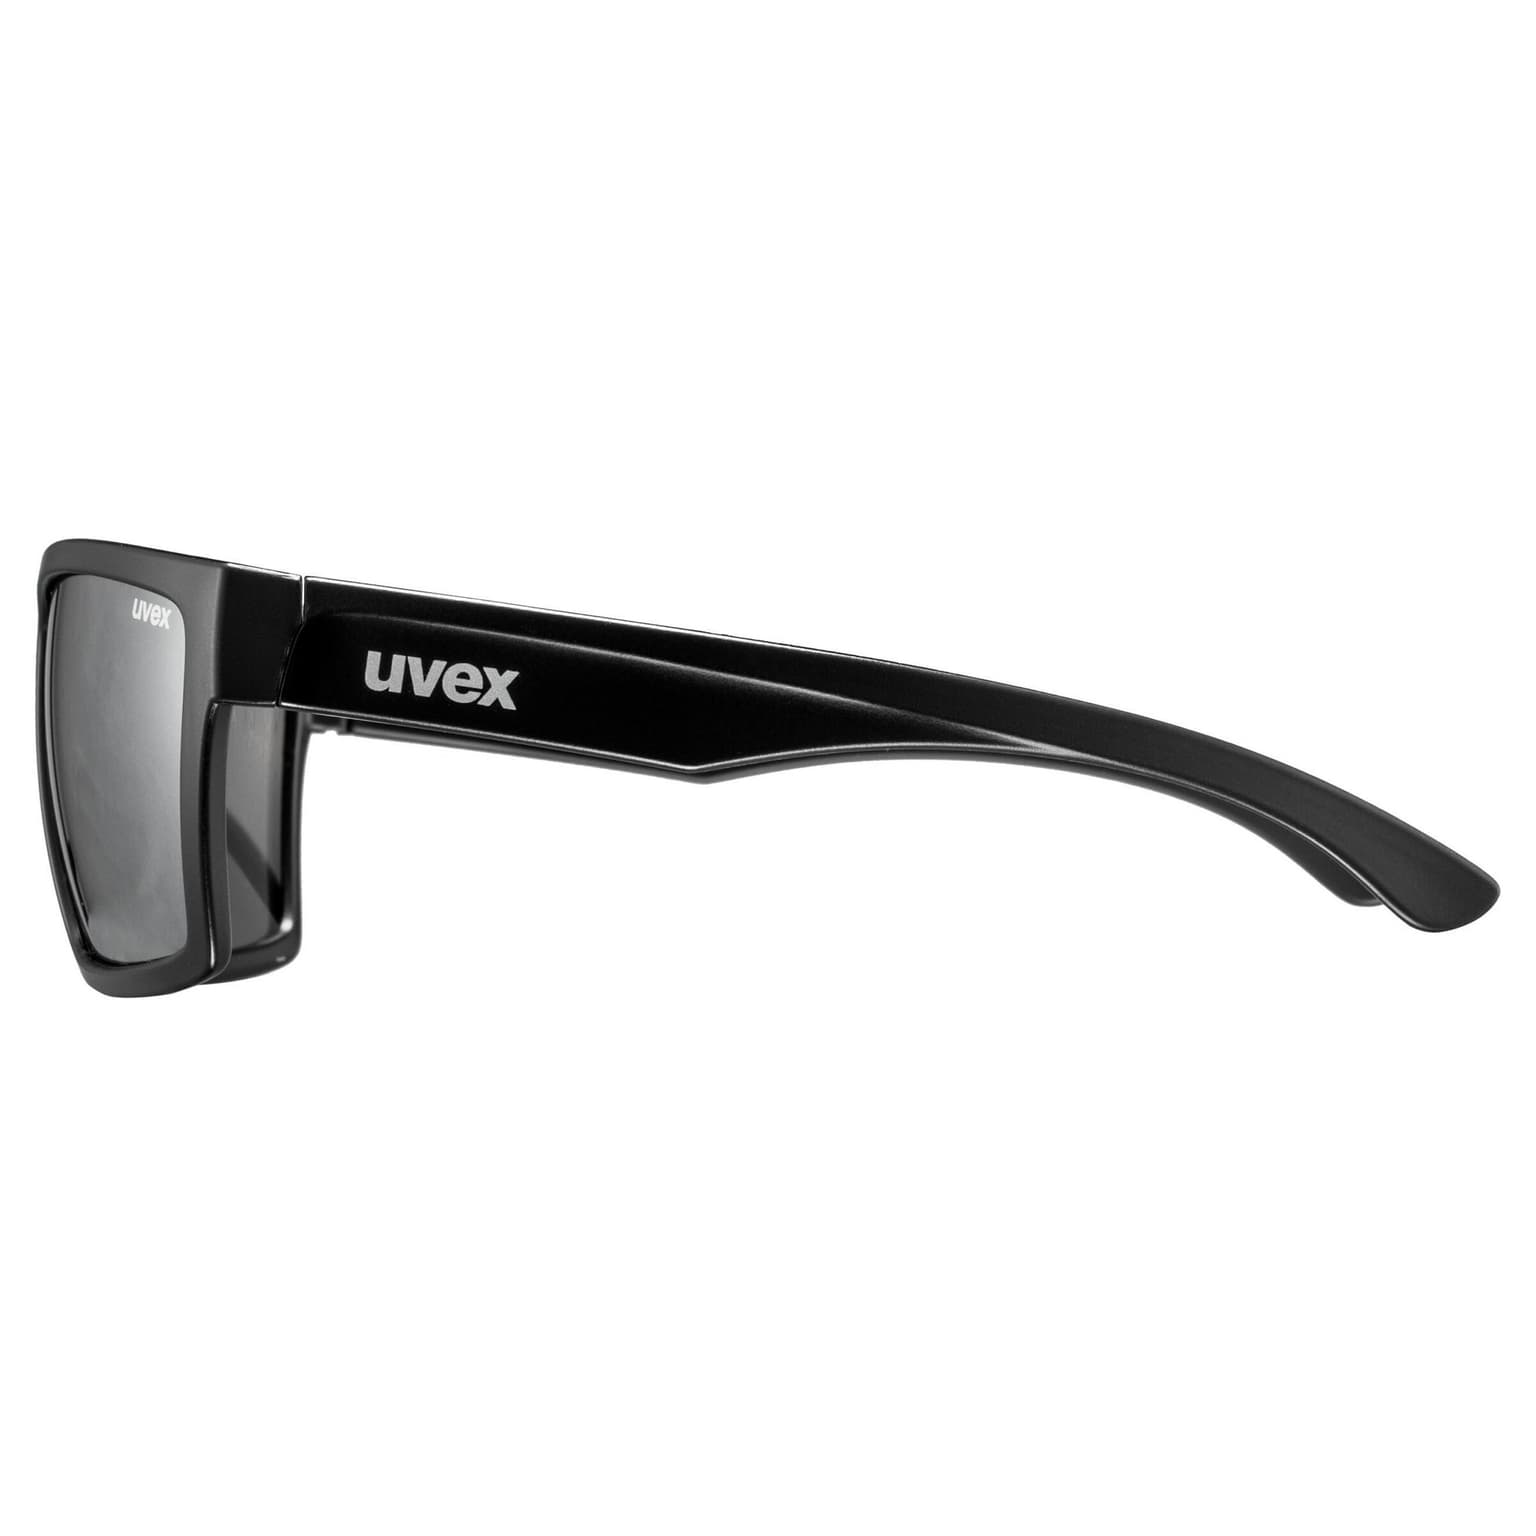 Uvex Uvex lgl 29 Sportbrille kohle 2